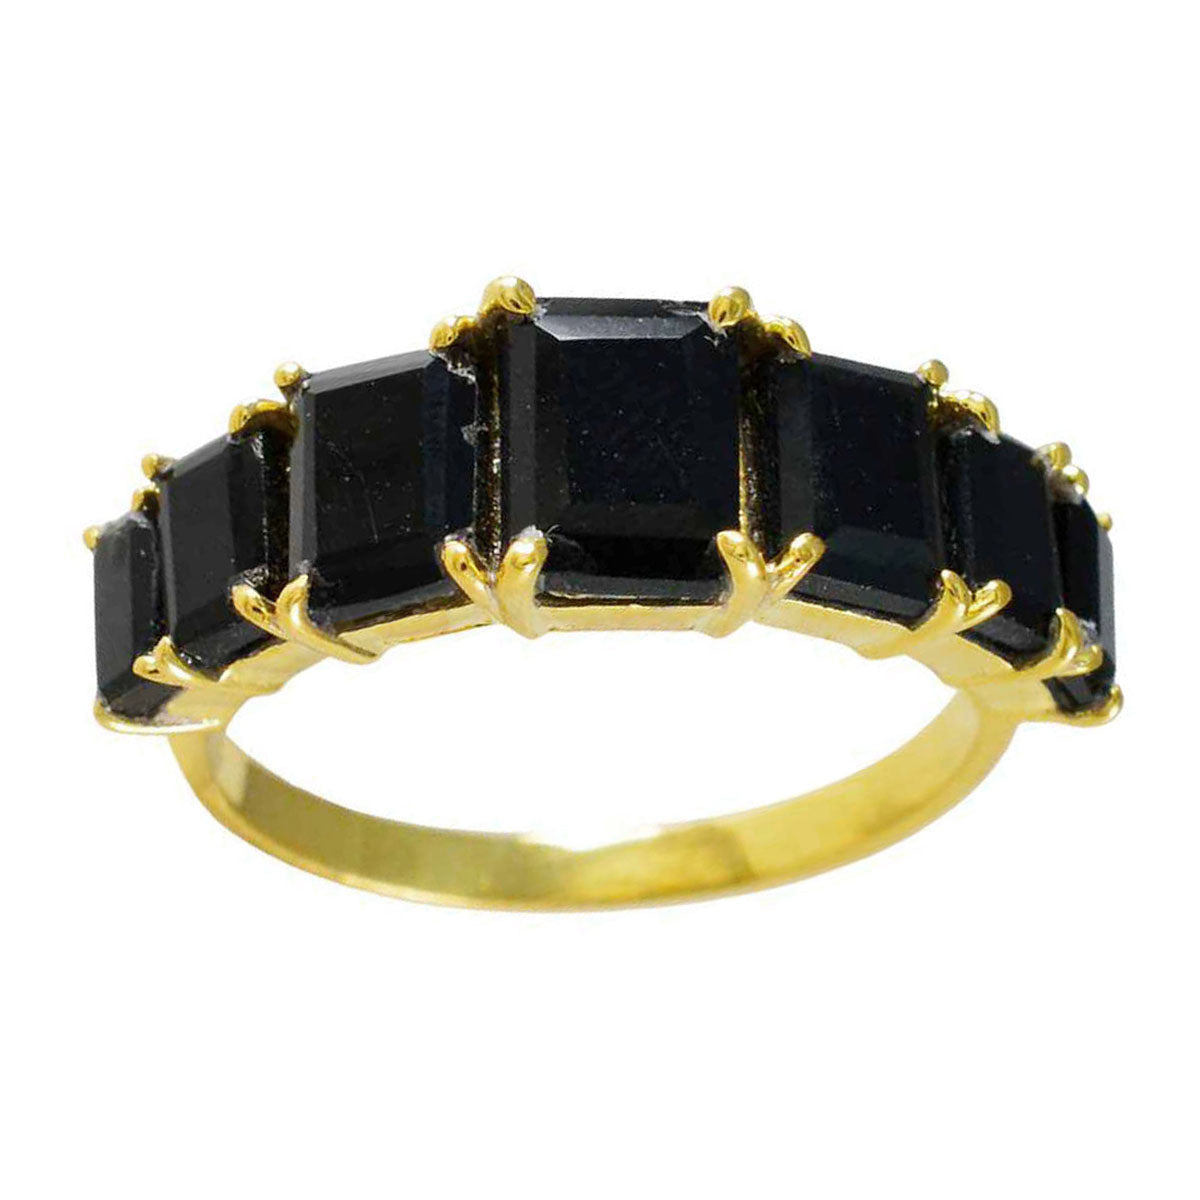 riyo exportör silverring med gul guldplätering svart onyxsten åttakant form stift mode smycken svart fredag ring